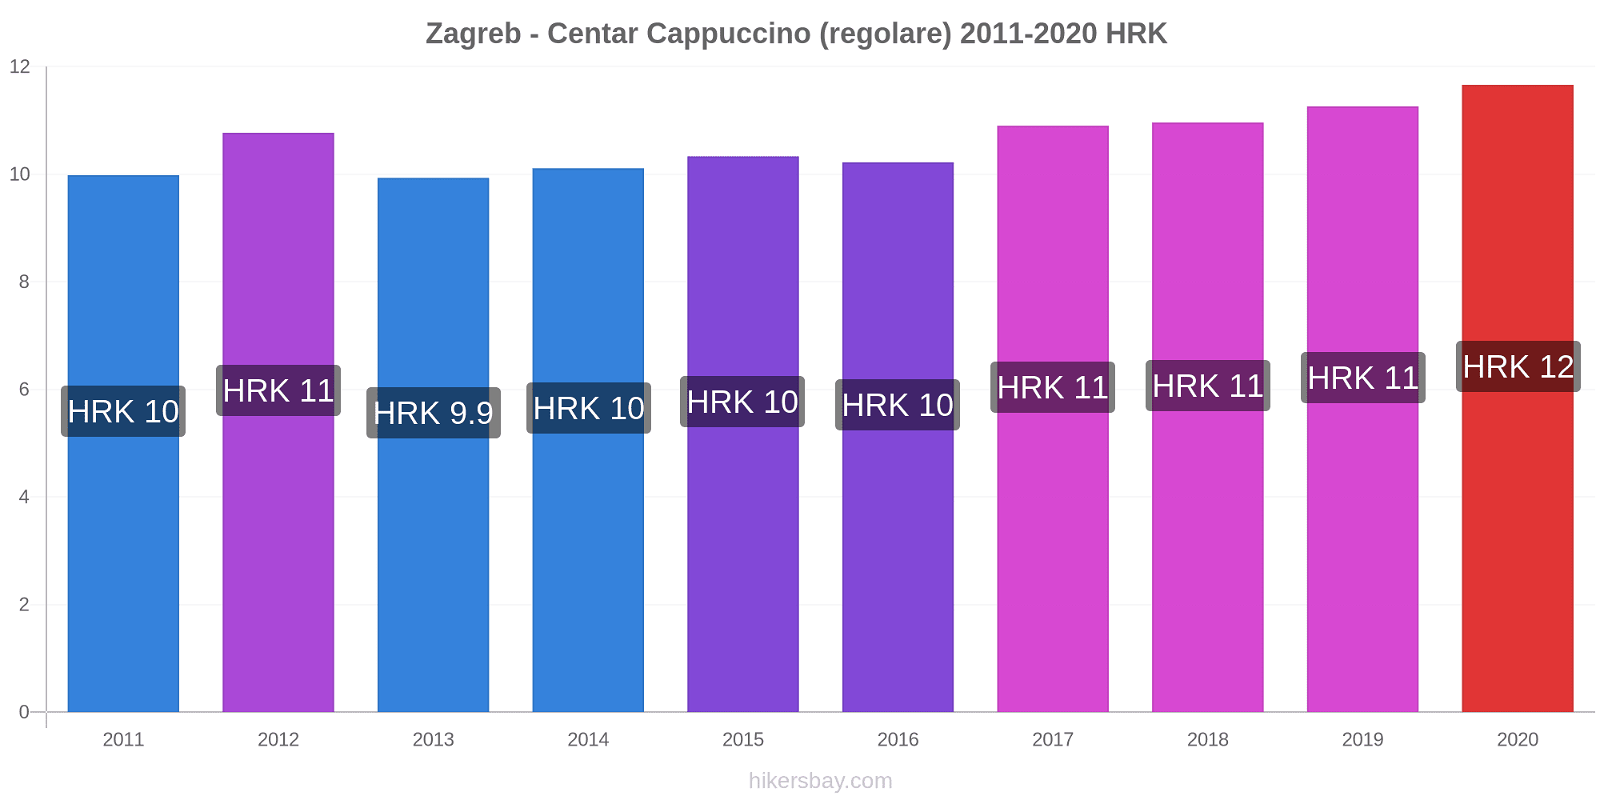 Zagreb - Centar variazioni di prezzo Cappuccino (normale) hikersbay.com